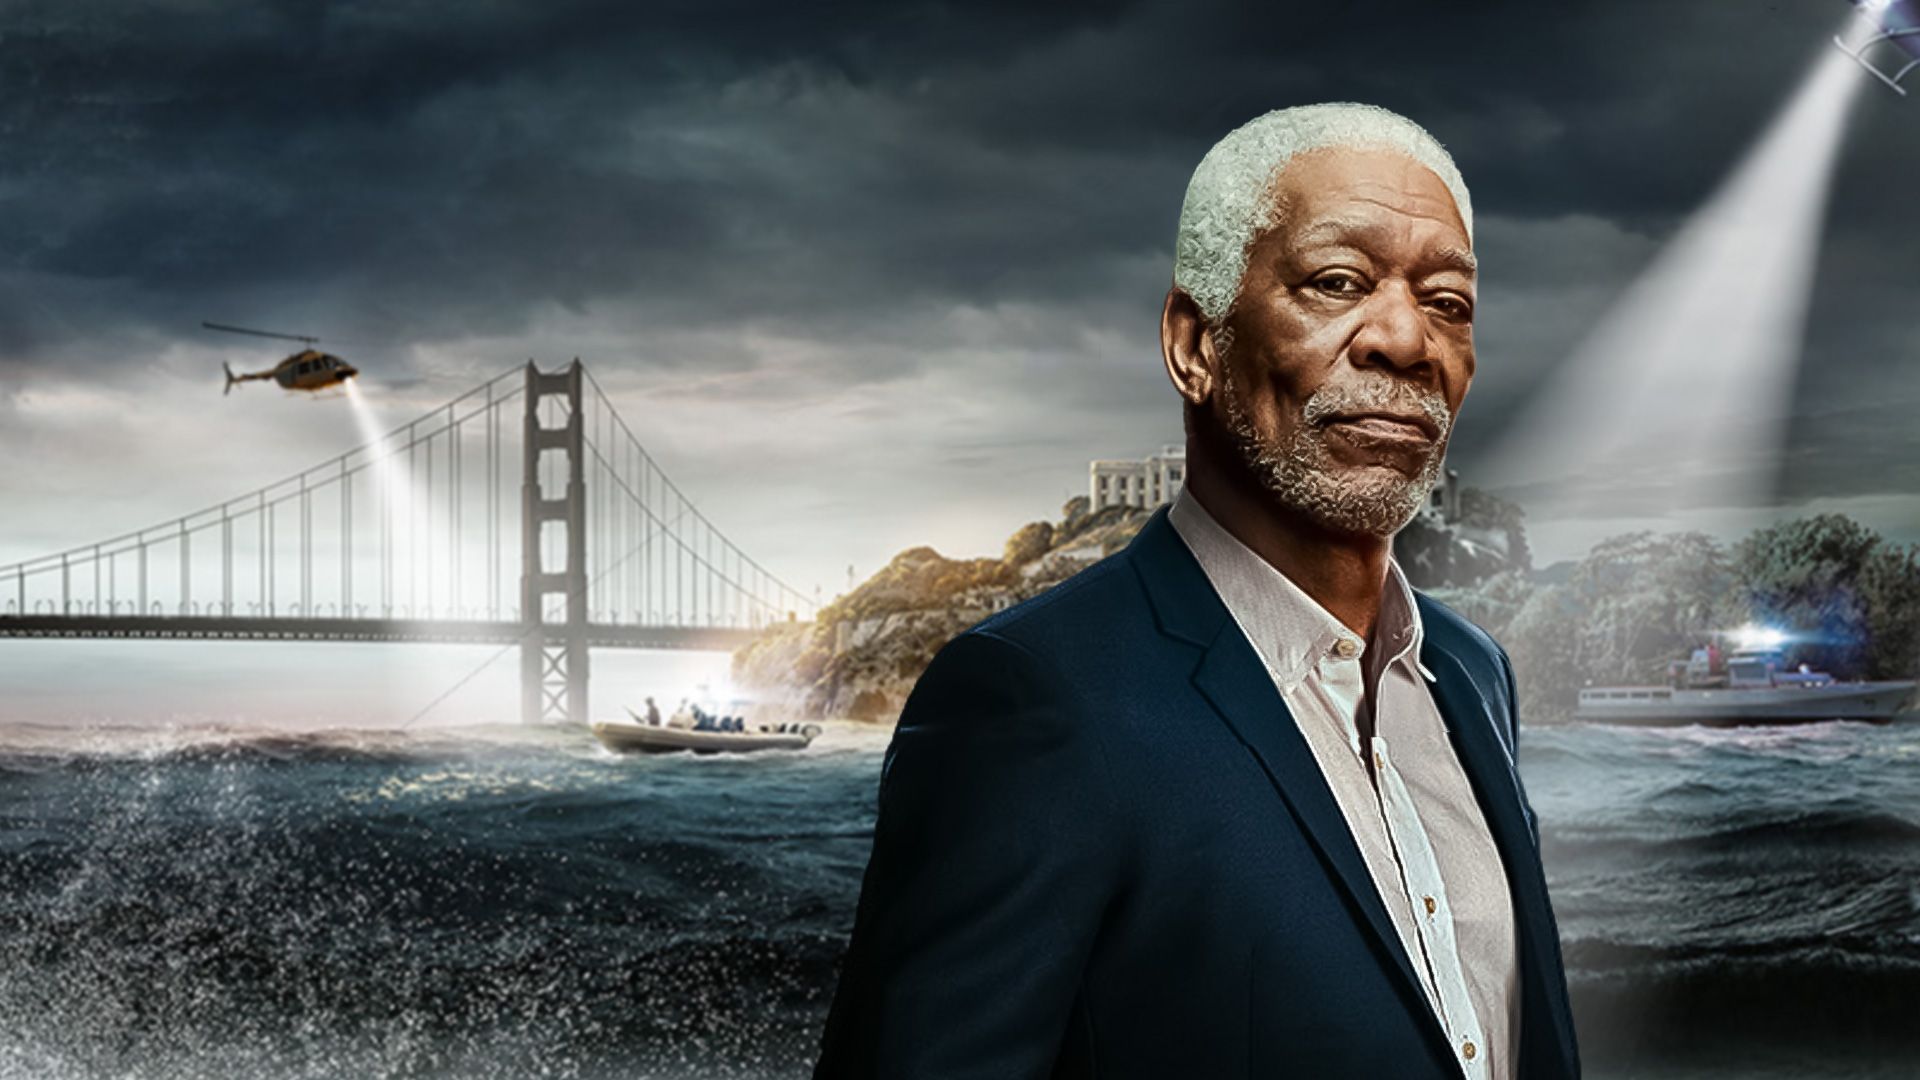 Die größten Gefängnisausbrüche - mit Morgan Freeman